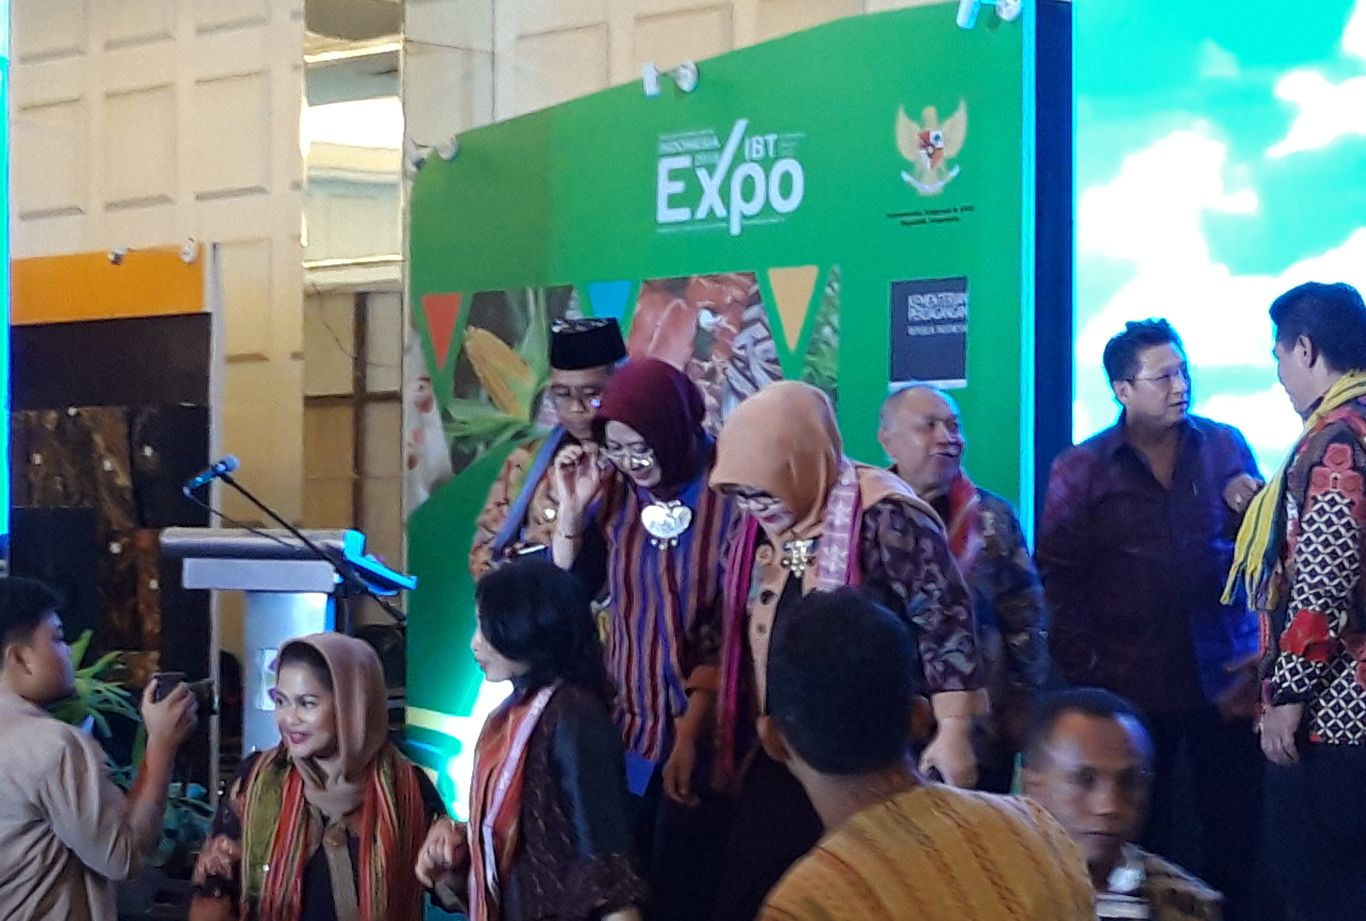 IBT expo 2018 di Garden Palace, Surabaya.